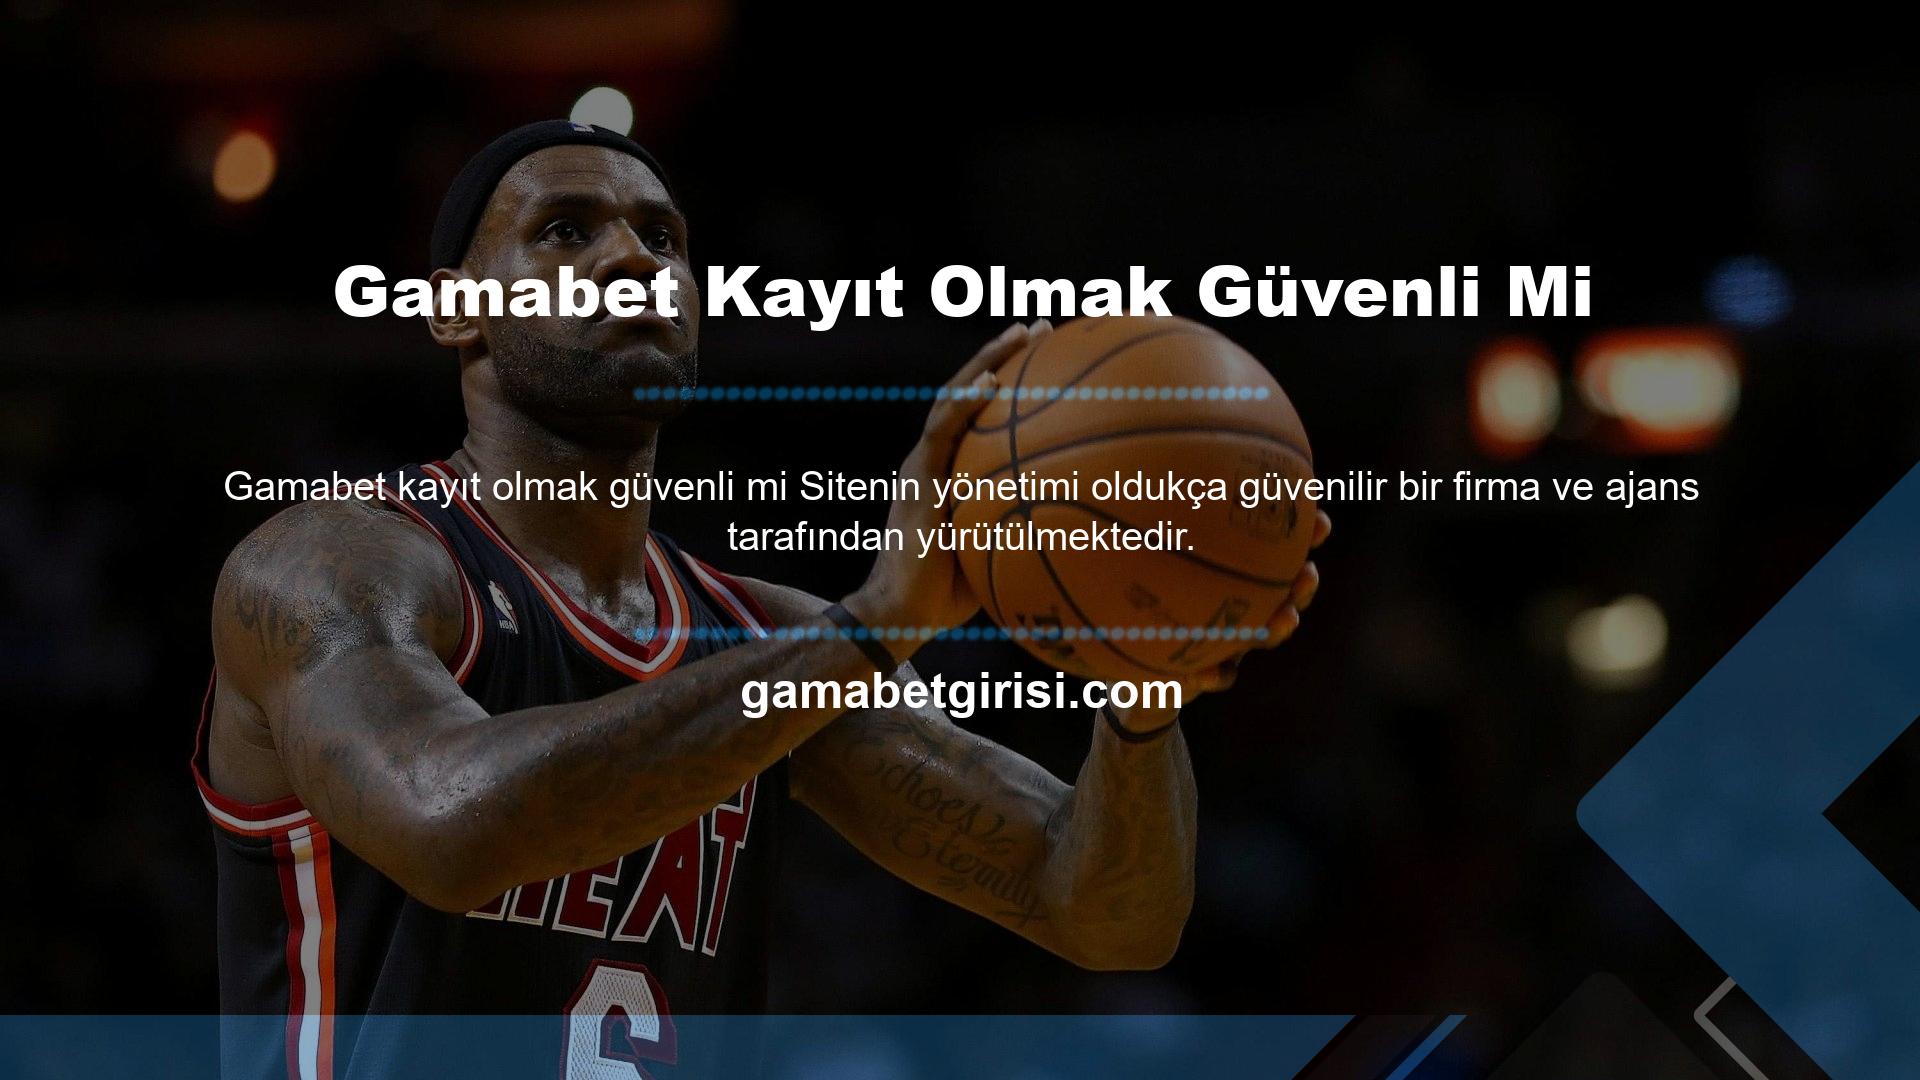 Gamabet web sitesi birçok ülkede yasal olmasına rağmen maalesef Türkiye'de de yasa dışıdır